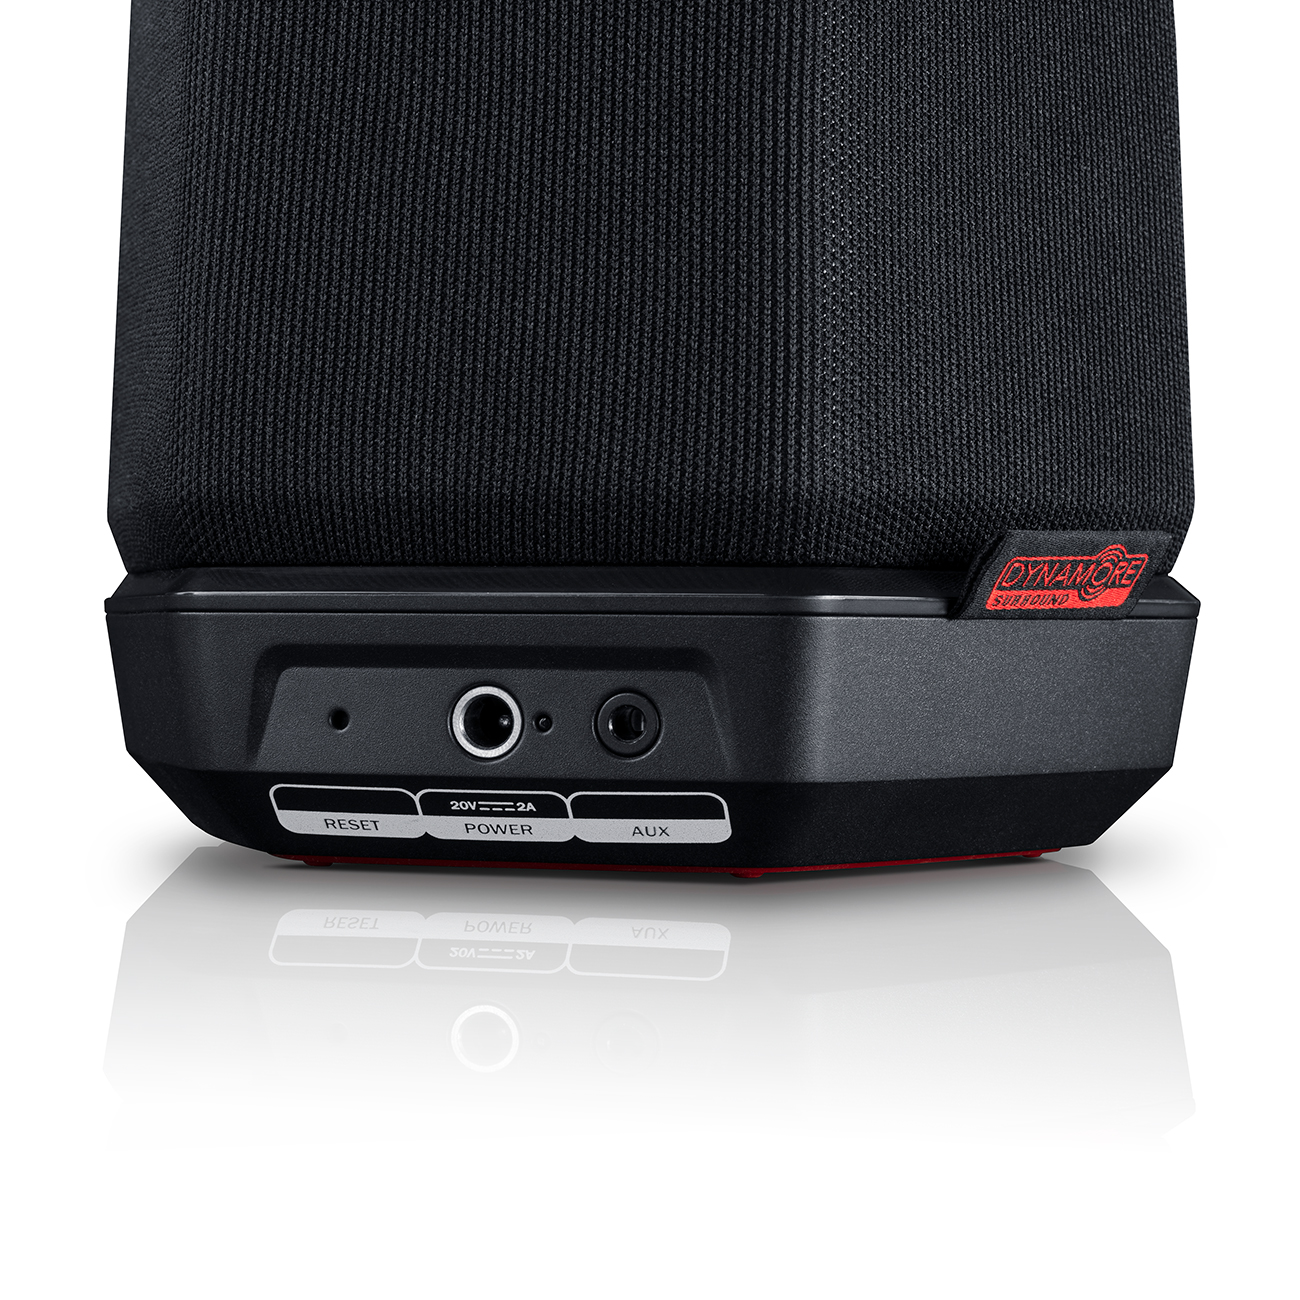 TEUFEL HOLIST HiFi Smart S Schwarz App-steuerbar, Bluetooth, Speaker